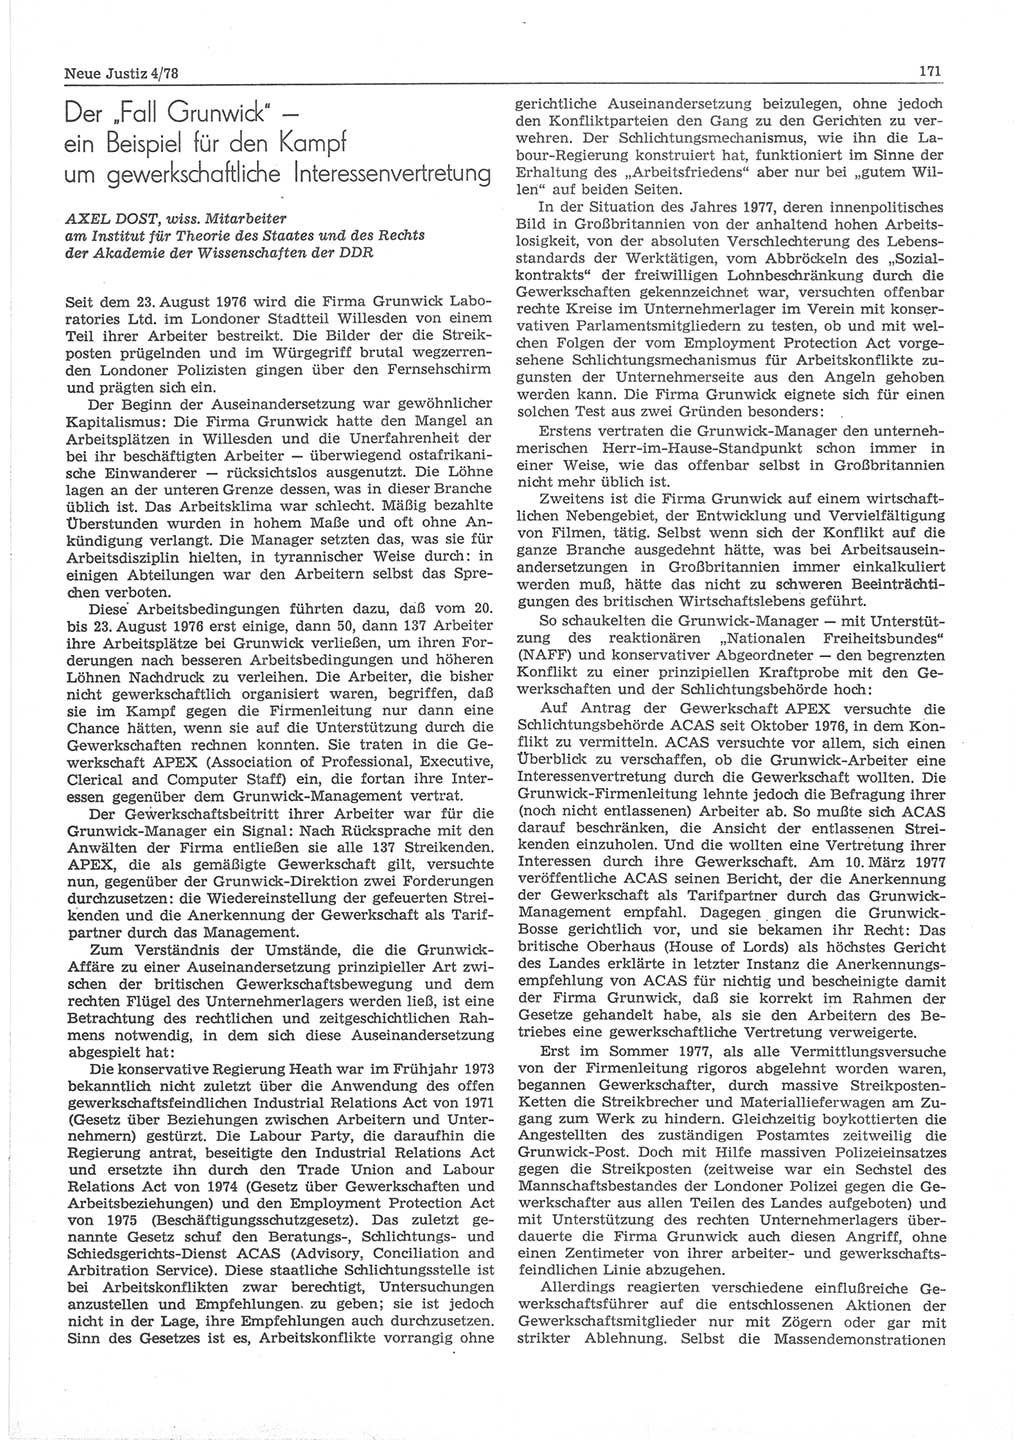 Neue Justiz (NJ), Zeitschrift für sozialistisches Recht und Gesetzlichkeit [Deutsche Demokratische Republik (DDR)], 32. Jahrgang 1978, Seite 171 (NJ DDR 1978, S. 171)